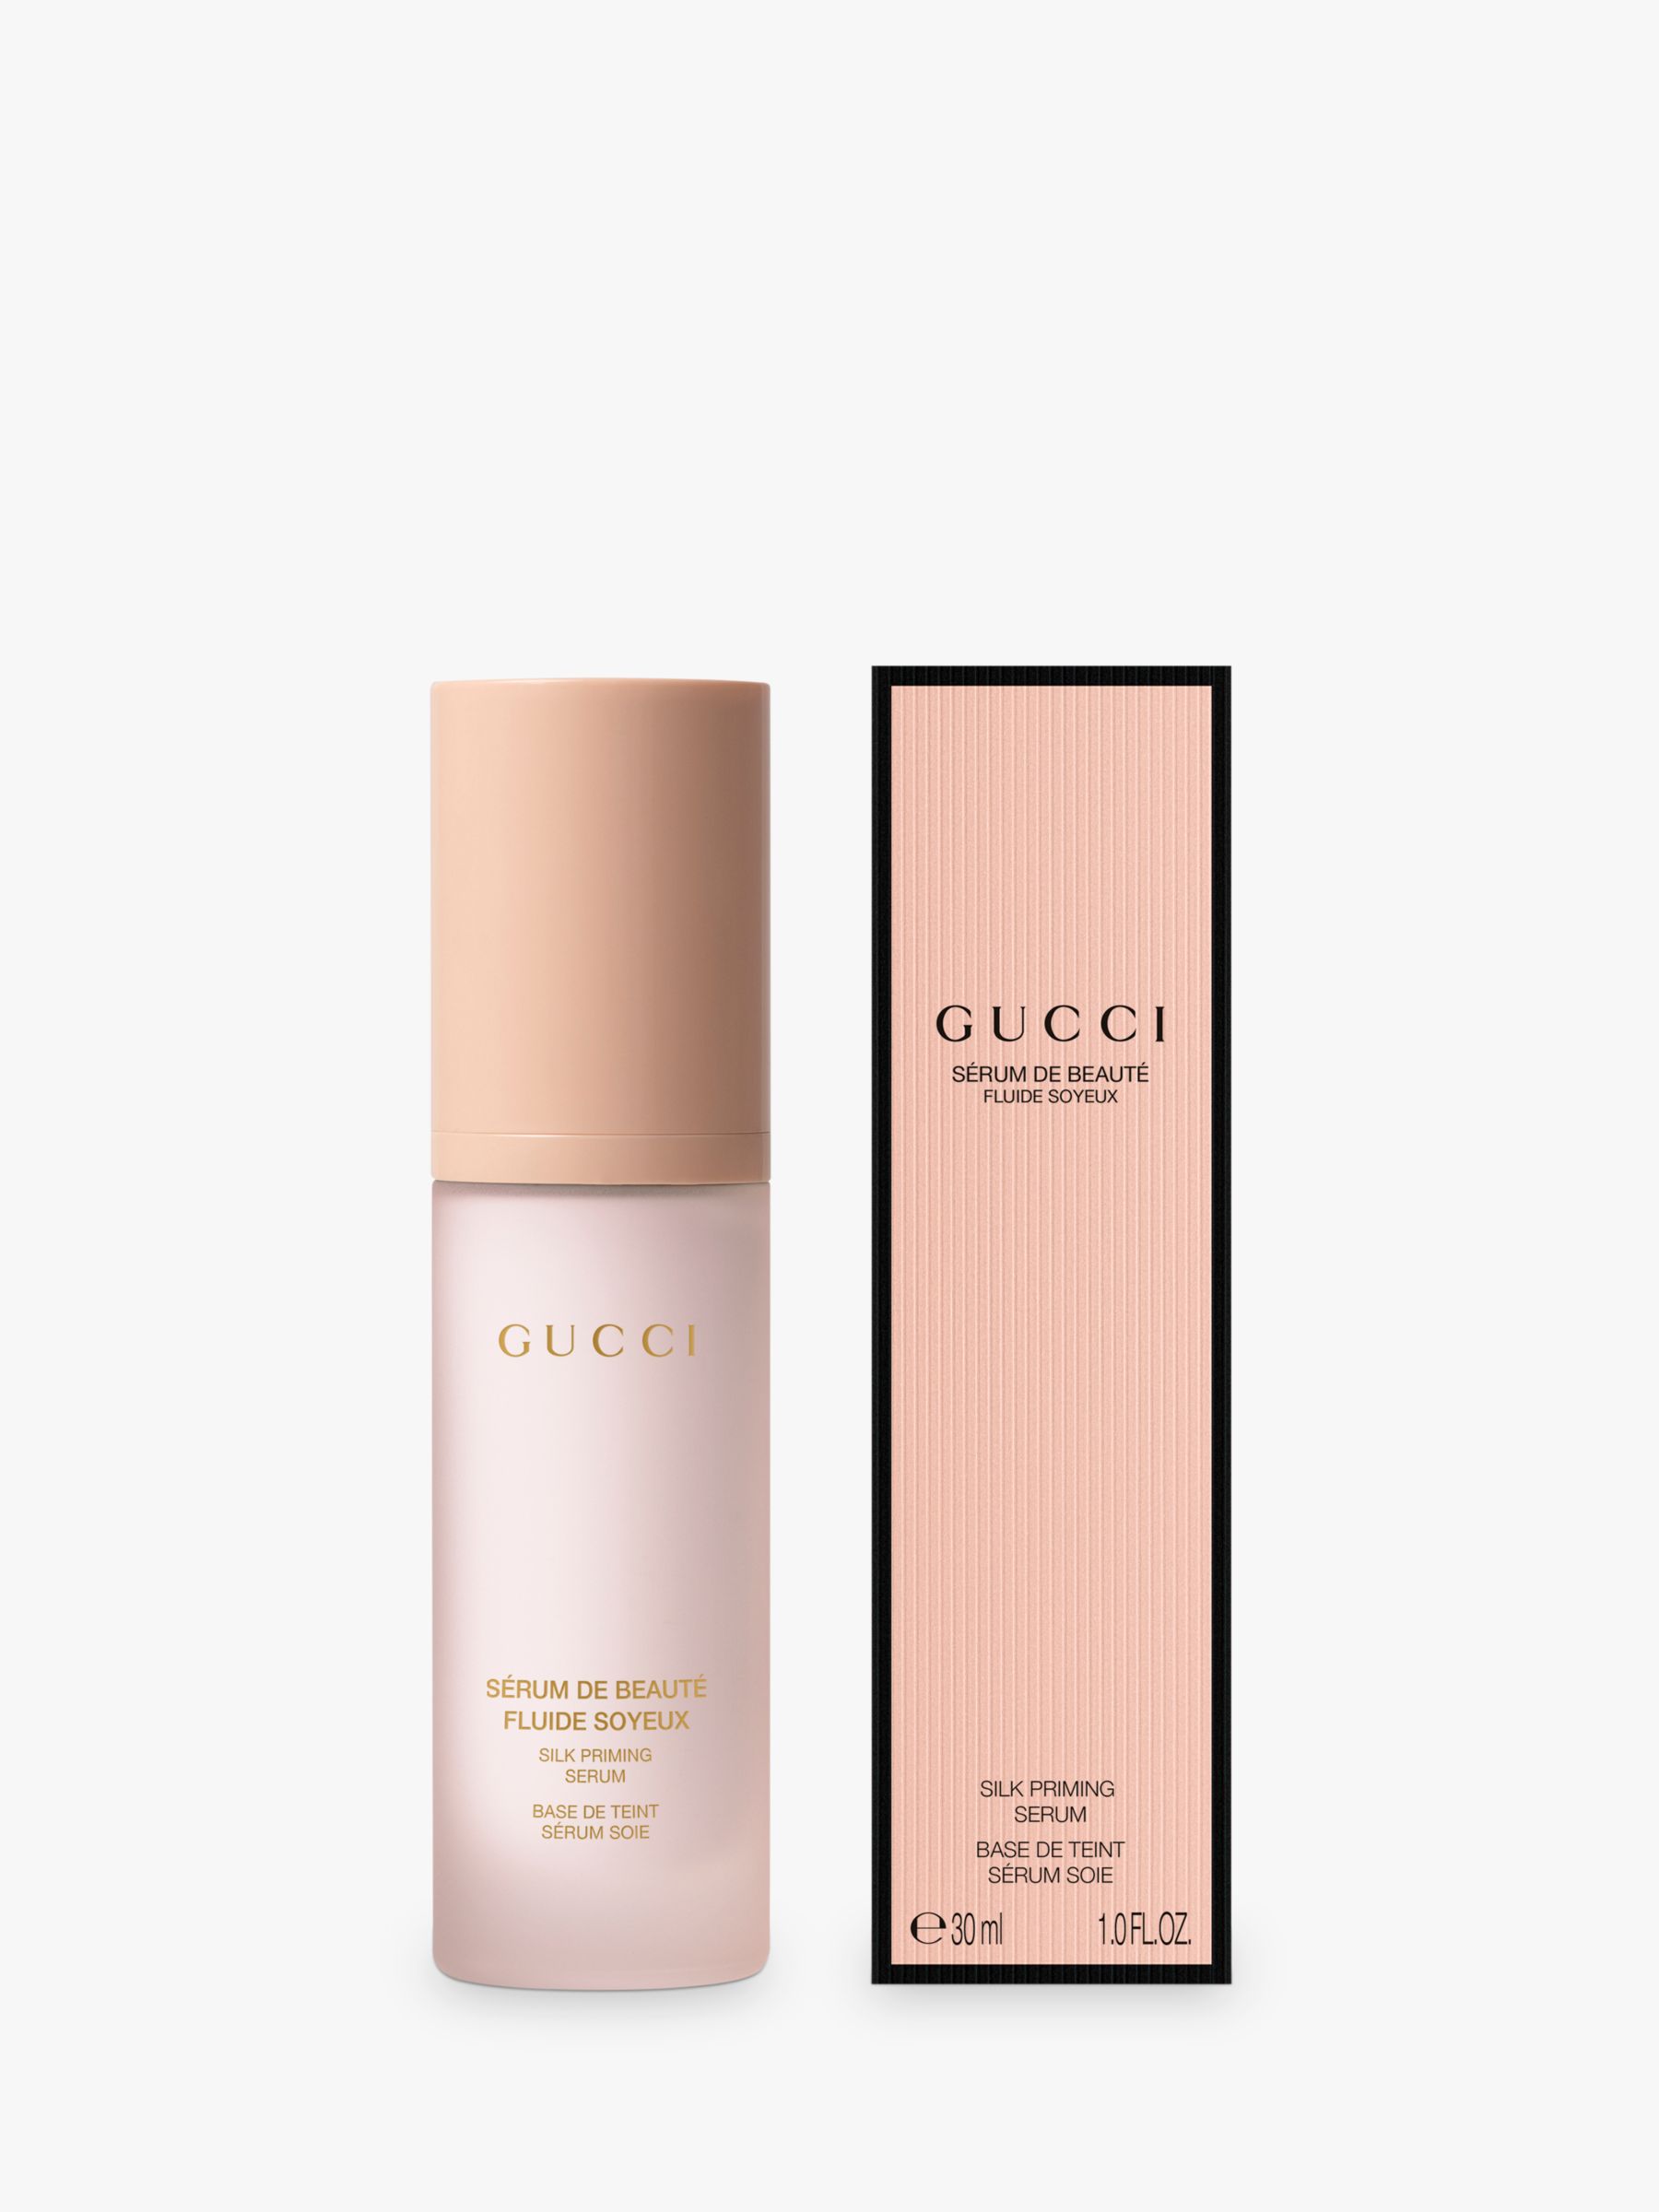 Gucci Sérum De Beauté Fluide Soyeux Silk Primer Serum, 30ml 1